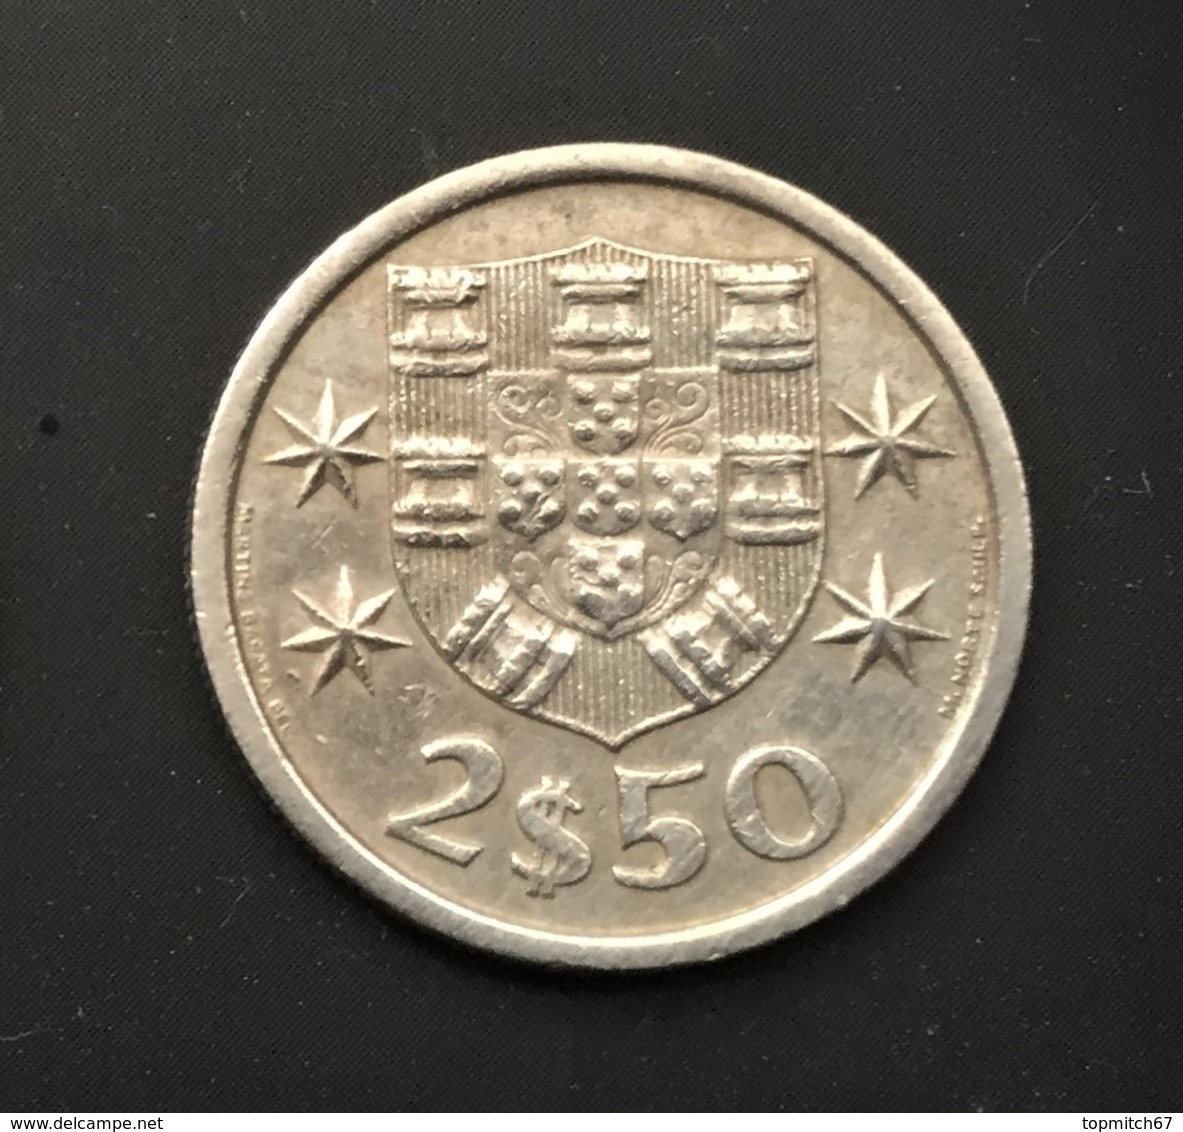 $F83-2$50 Coin - Portugal - 1976 - Portugal